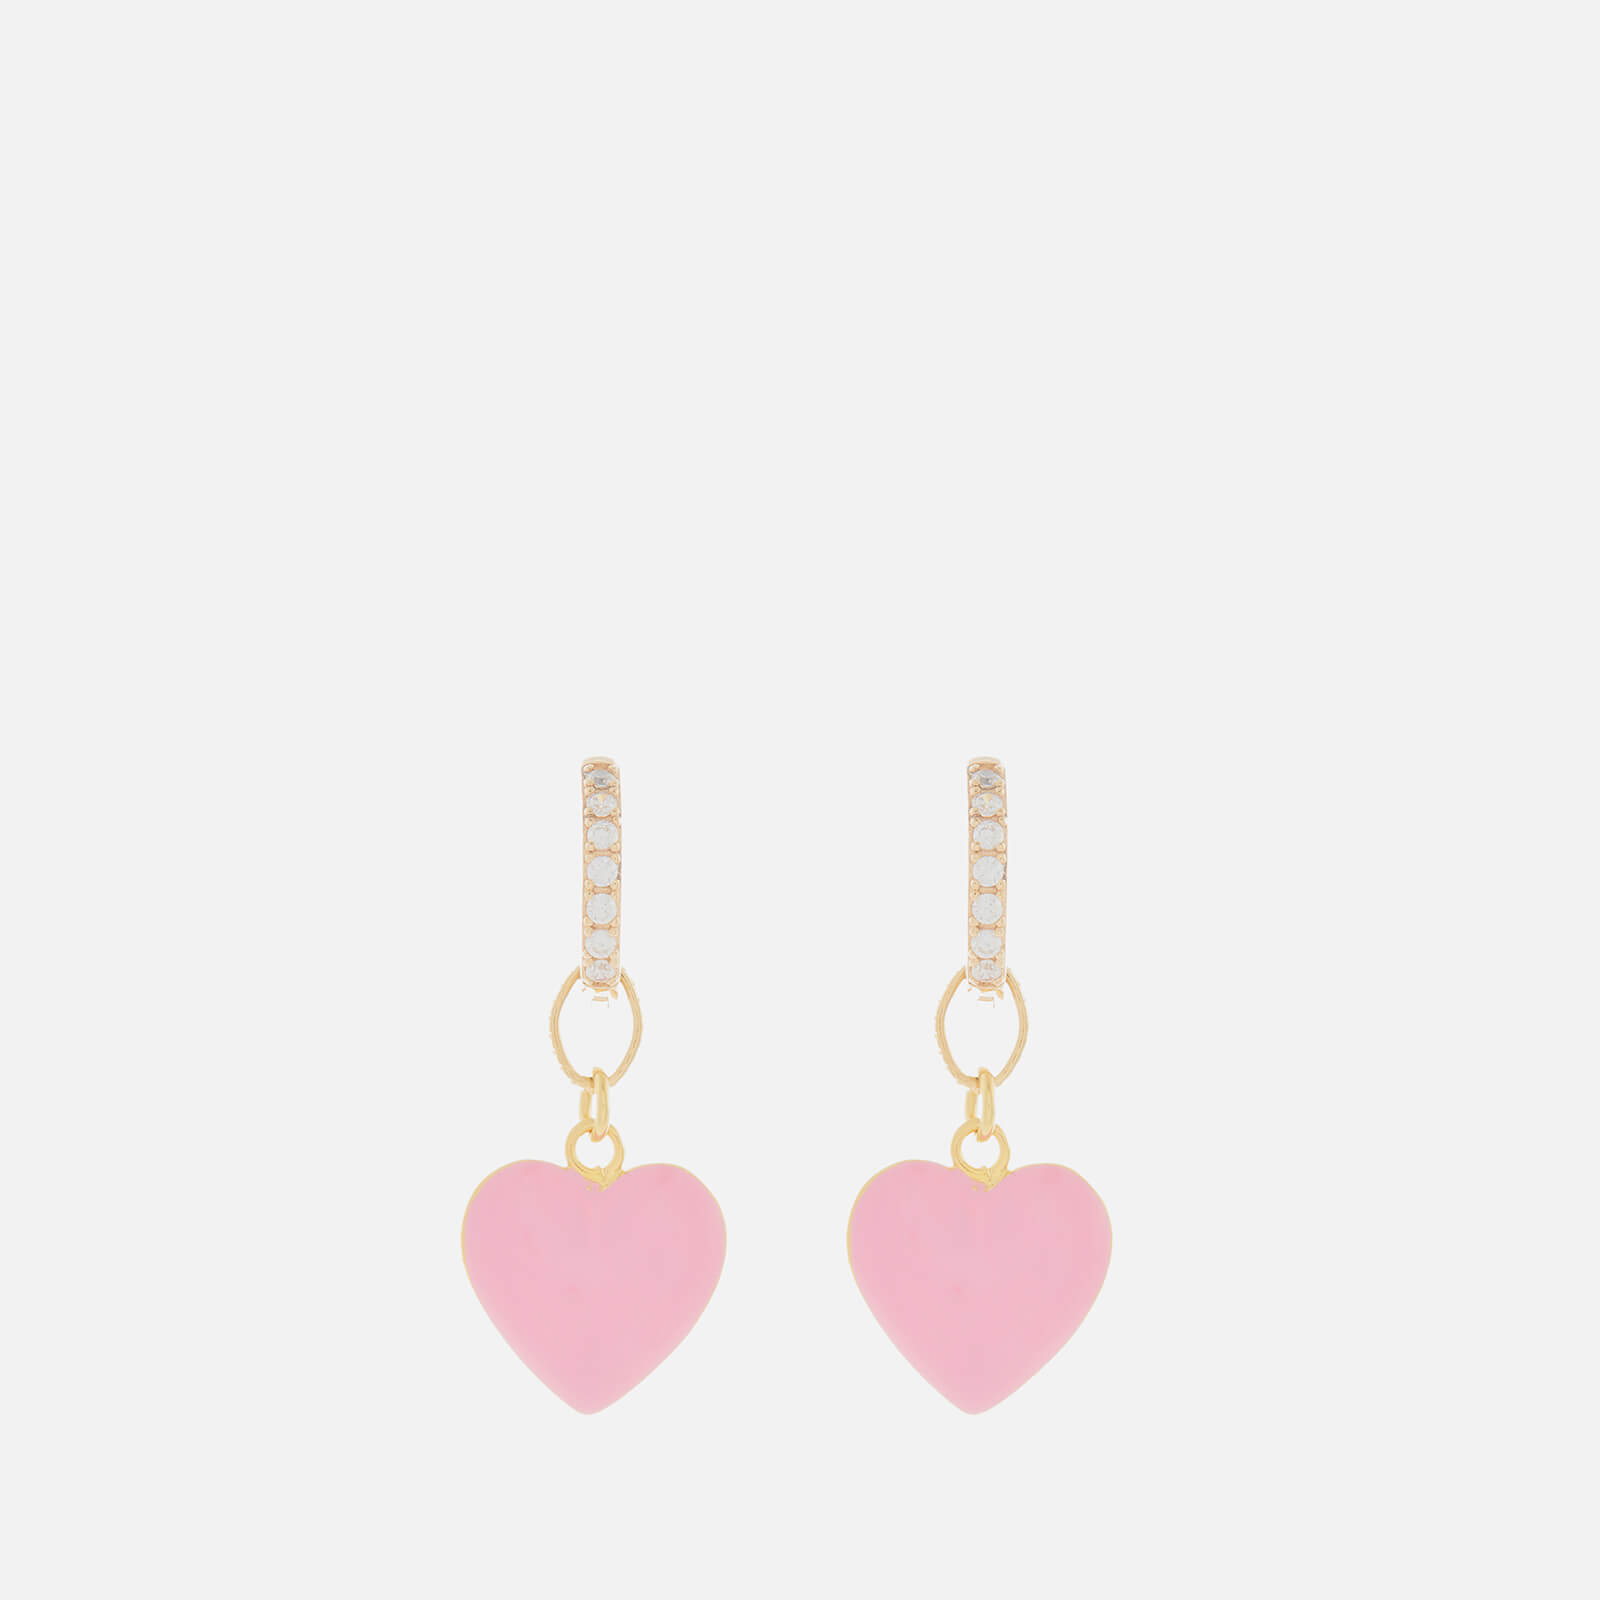 Wilhelmina Garcia Women's Heart Crystal Earring - Pink